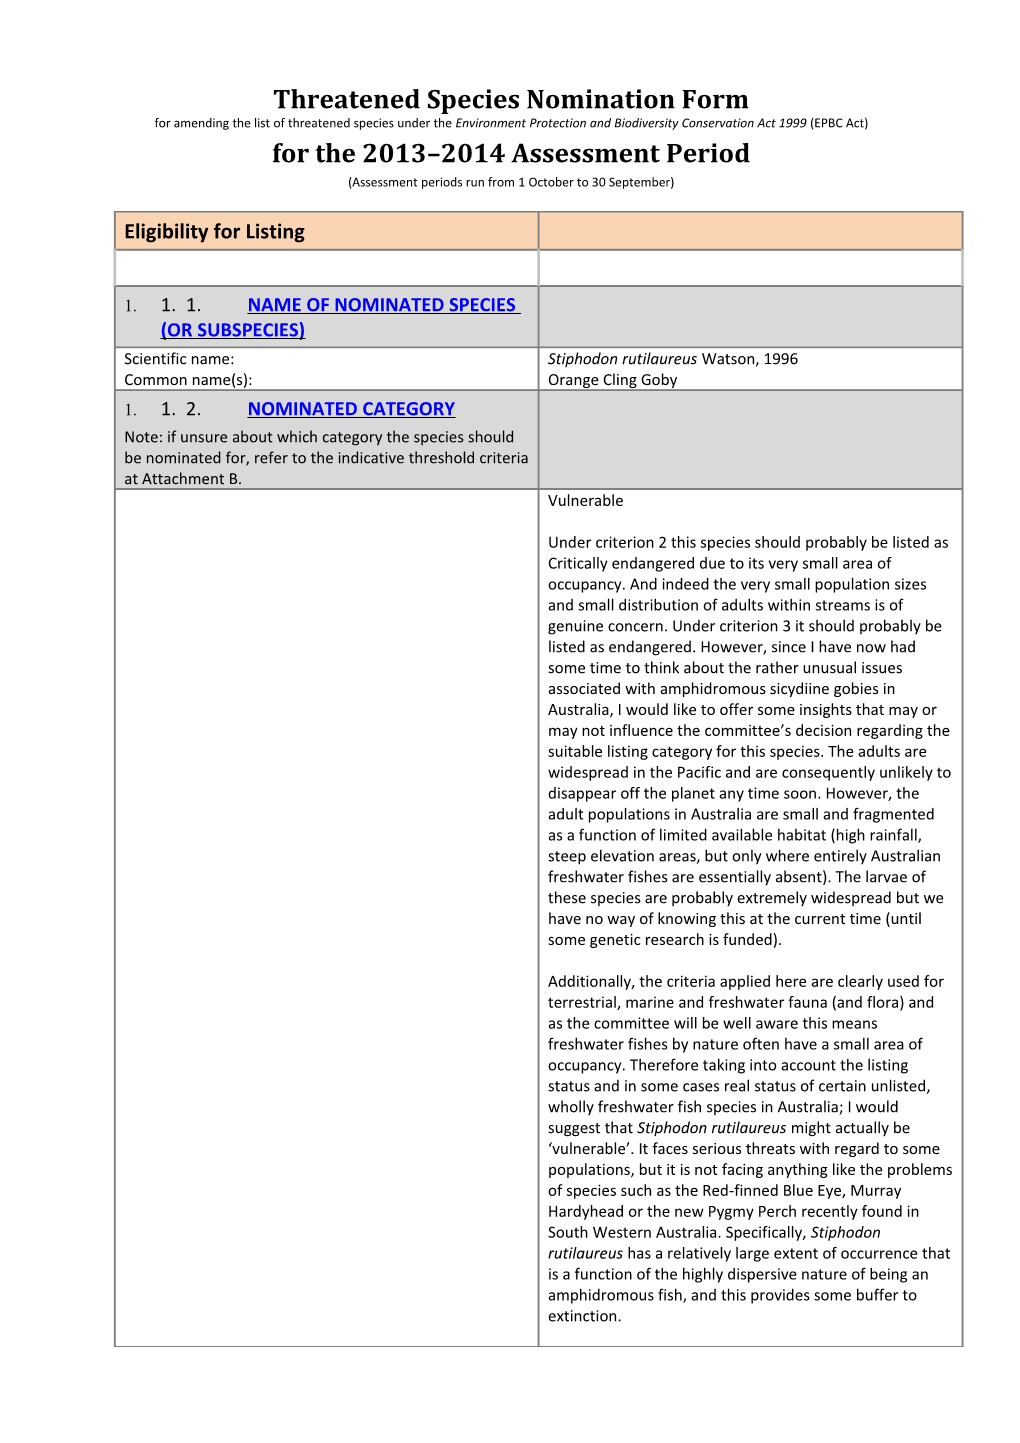 Threatened Species Nomination Form 2013 2014 (EPBC Act) - Stiphodon Rutilaureus